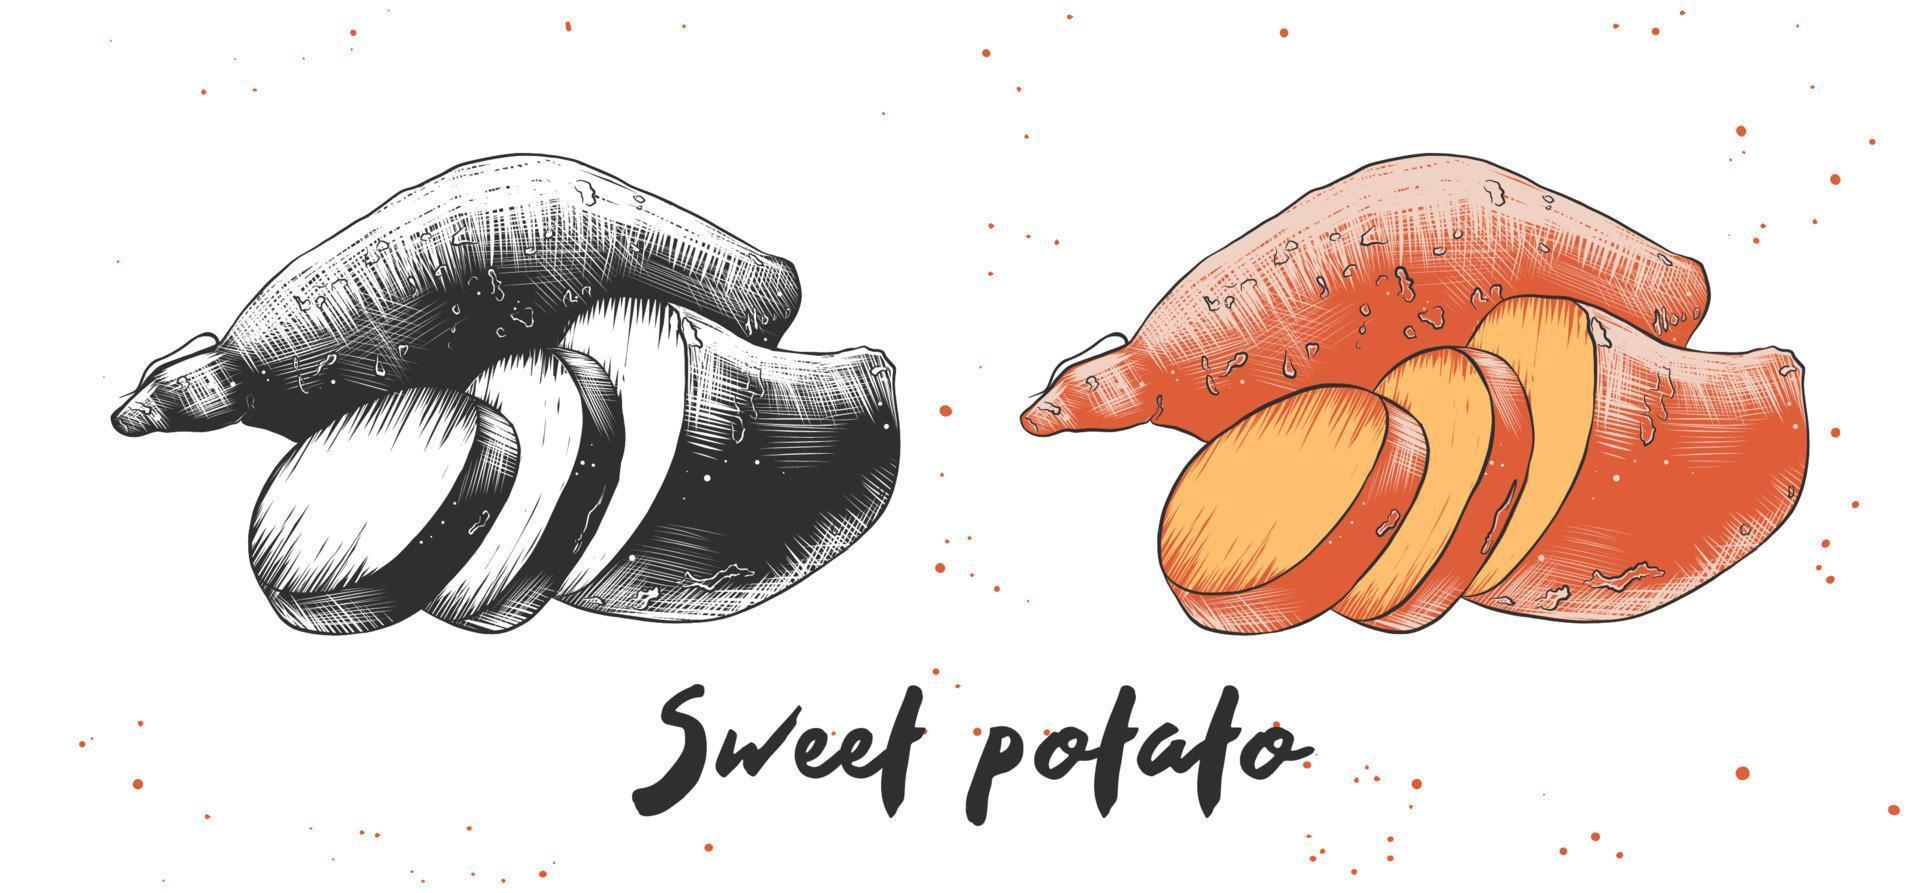 vektorgravierte Illustration für Poster, Dekoration und Druck. hand gezeichnete skizze von süßkartoffeln in monochrom und bunt. detaillierte vegetarische Essenszeichnung. vektor